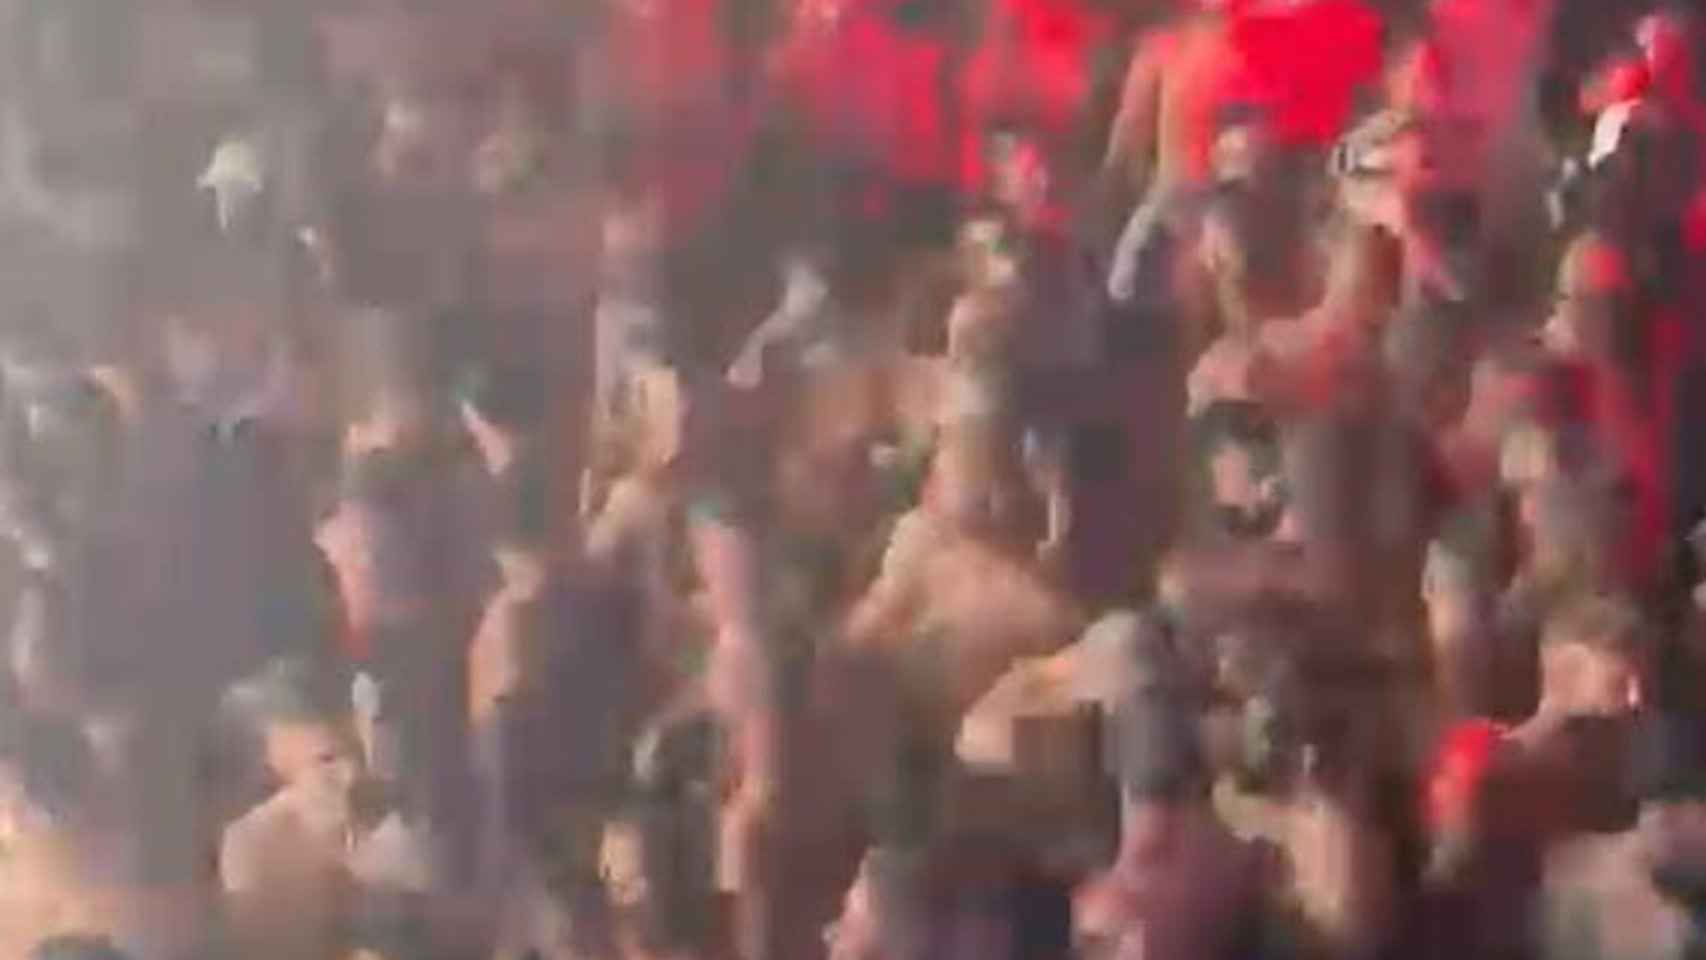 Fotograma de uno de los vídeos distribuidos por redes en los que se puede ver el incumplimiento de la distancia y aforo en la fiesta.